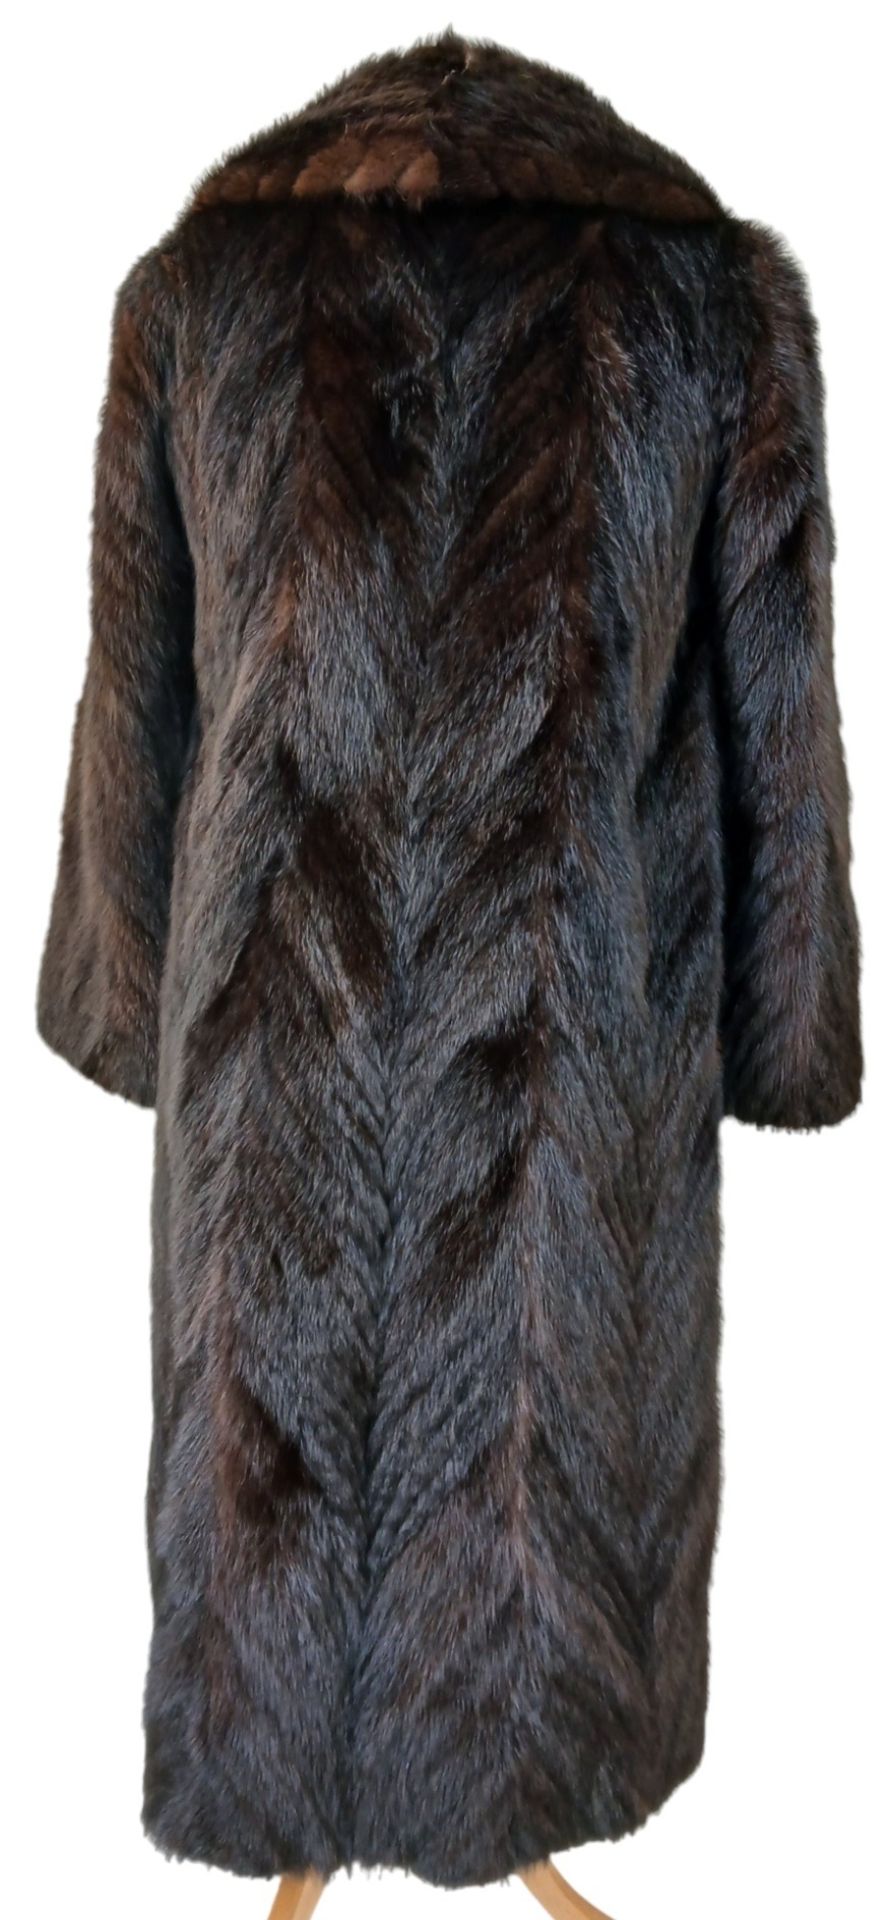 A Vintage Full Length Fur Coat - Possibly Mink/Sable. - Bild 3 aus 7